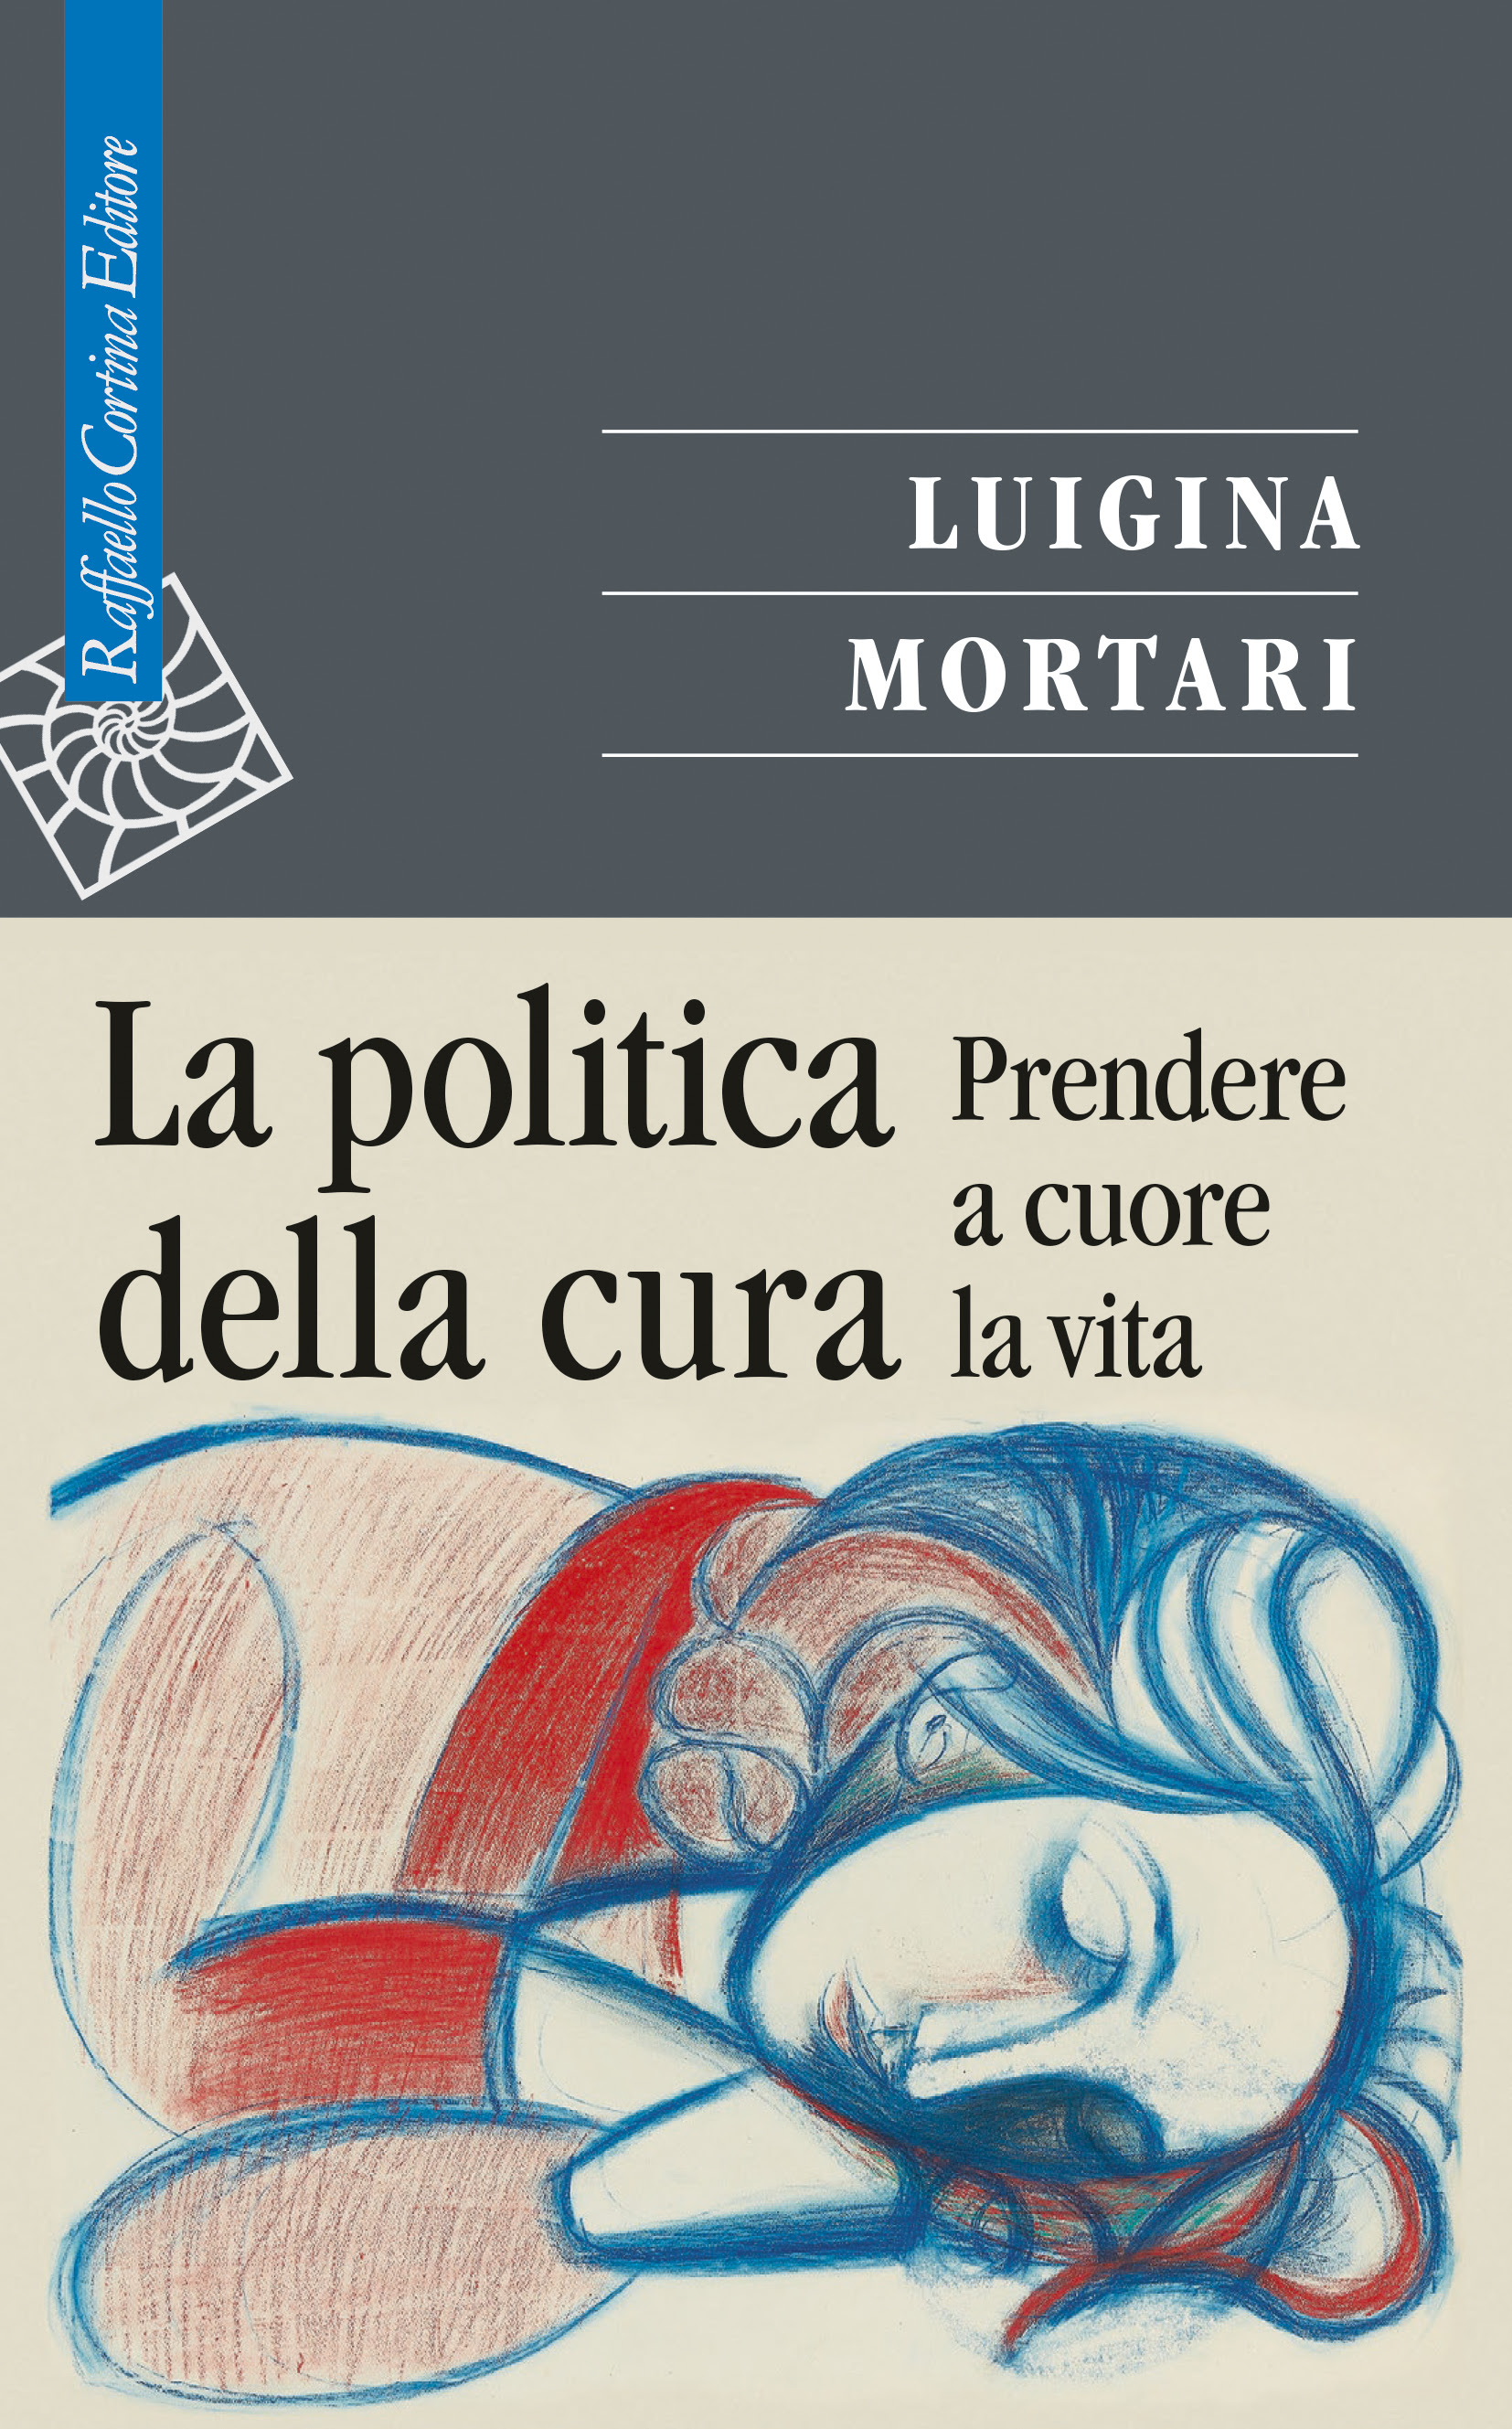 Luigina Mortari - La politica della cura 